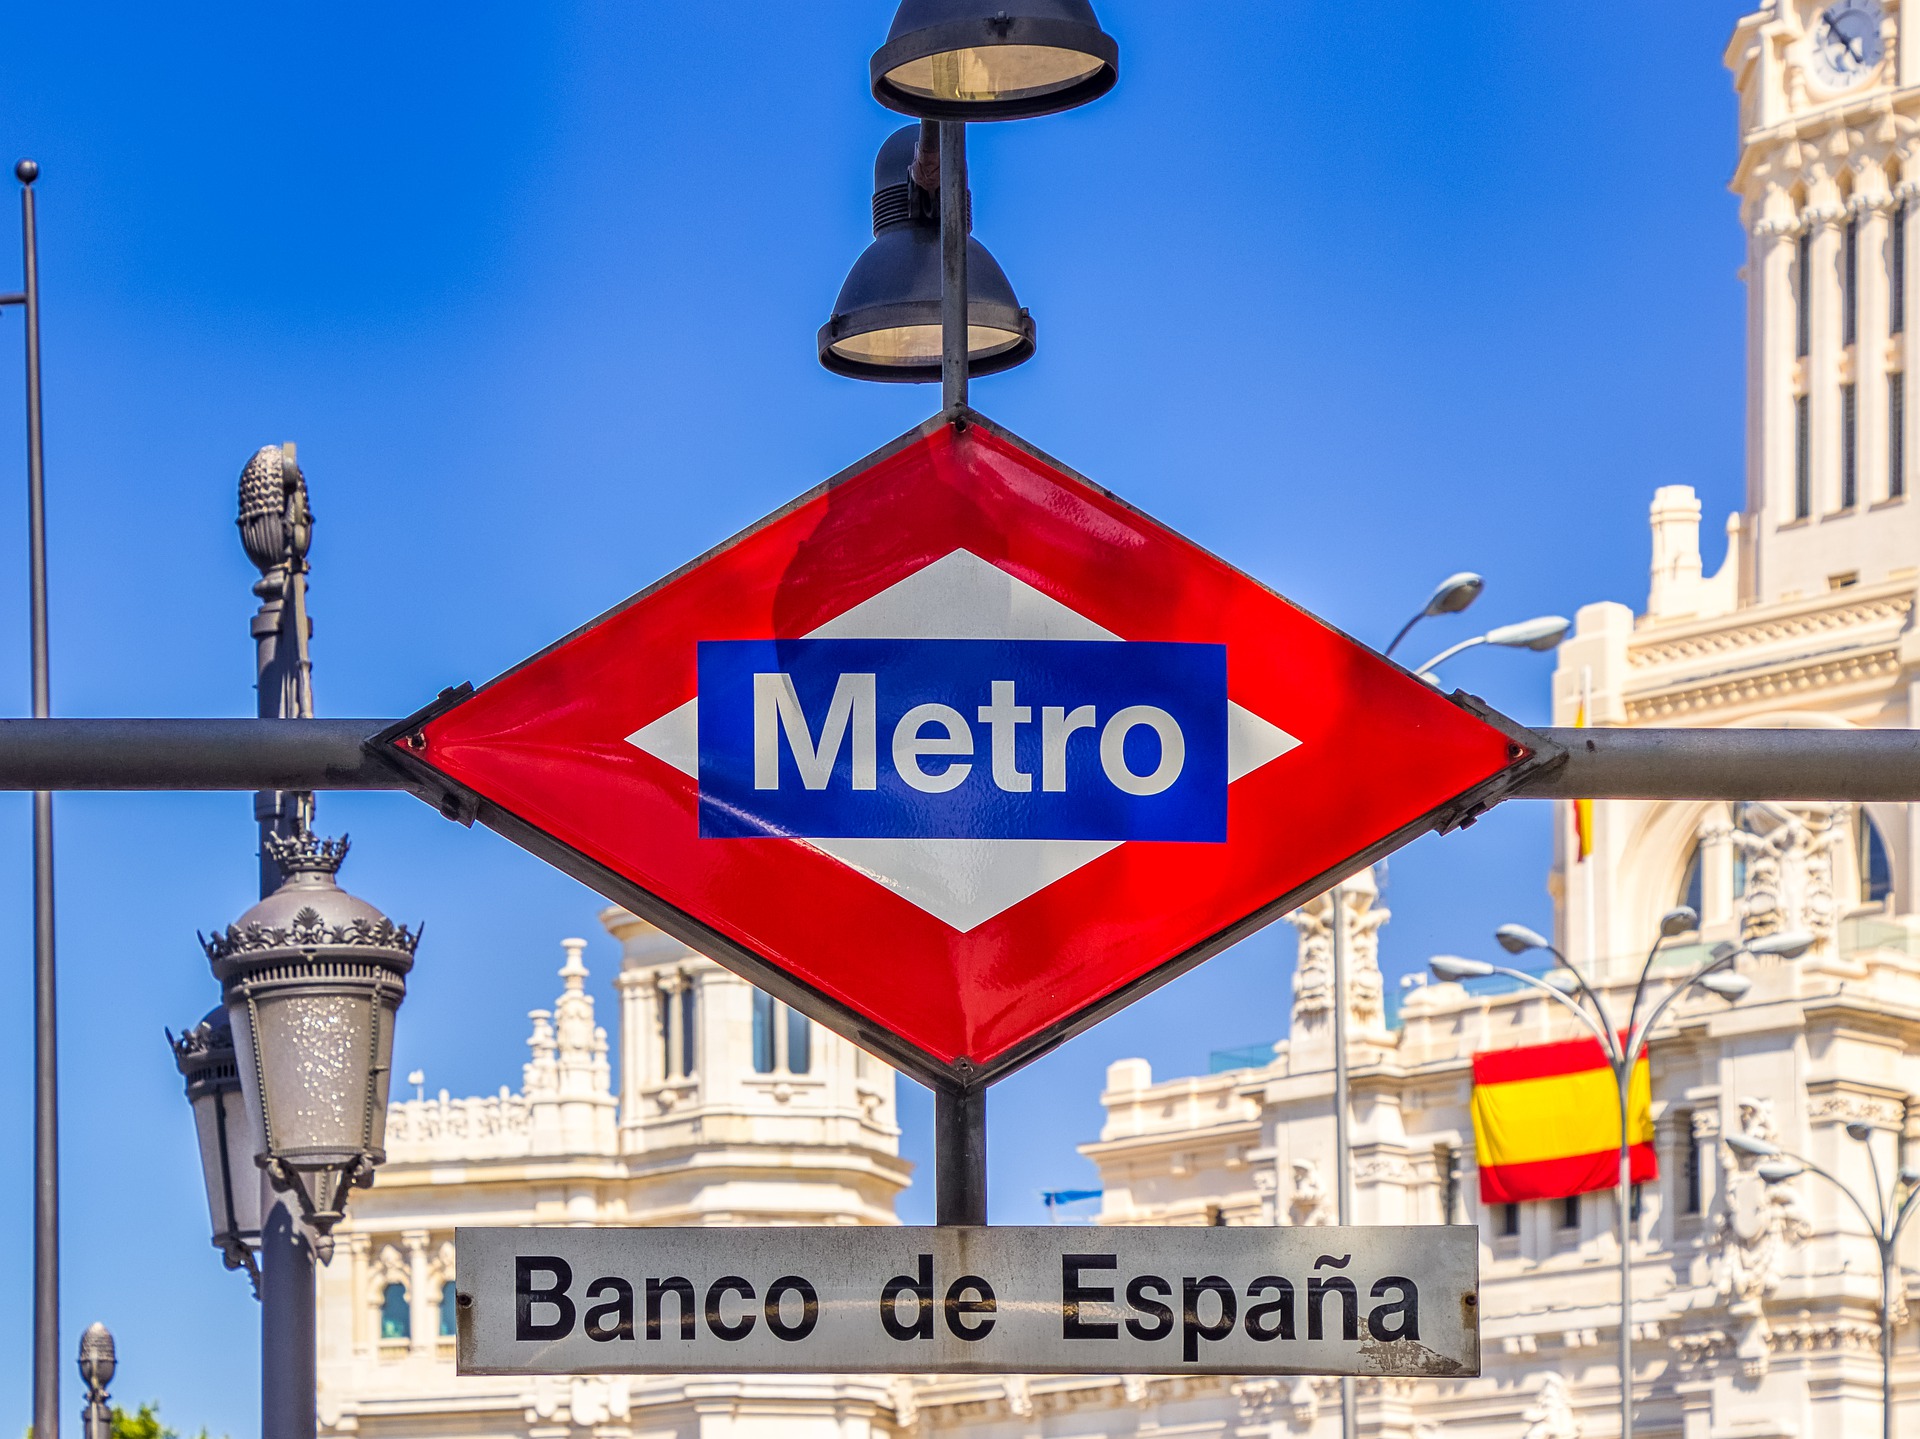 Madrid Metro Banco de España Station